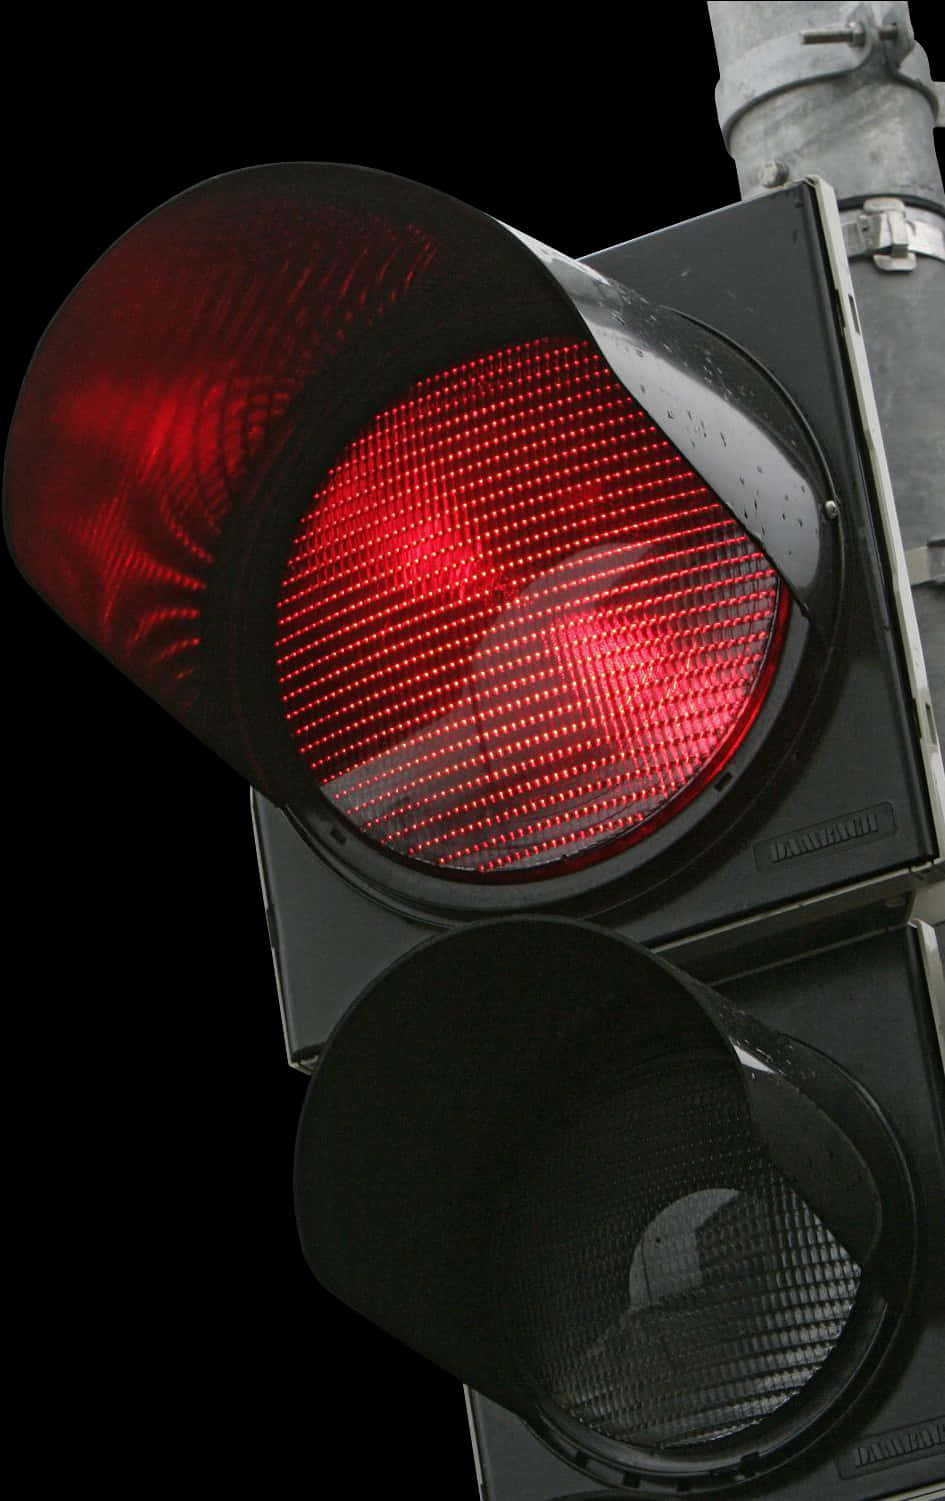 Illuminated Red Traffic Lightat Night.jpg